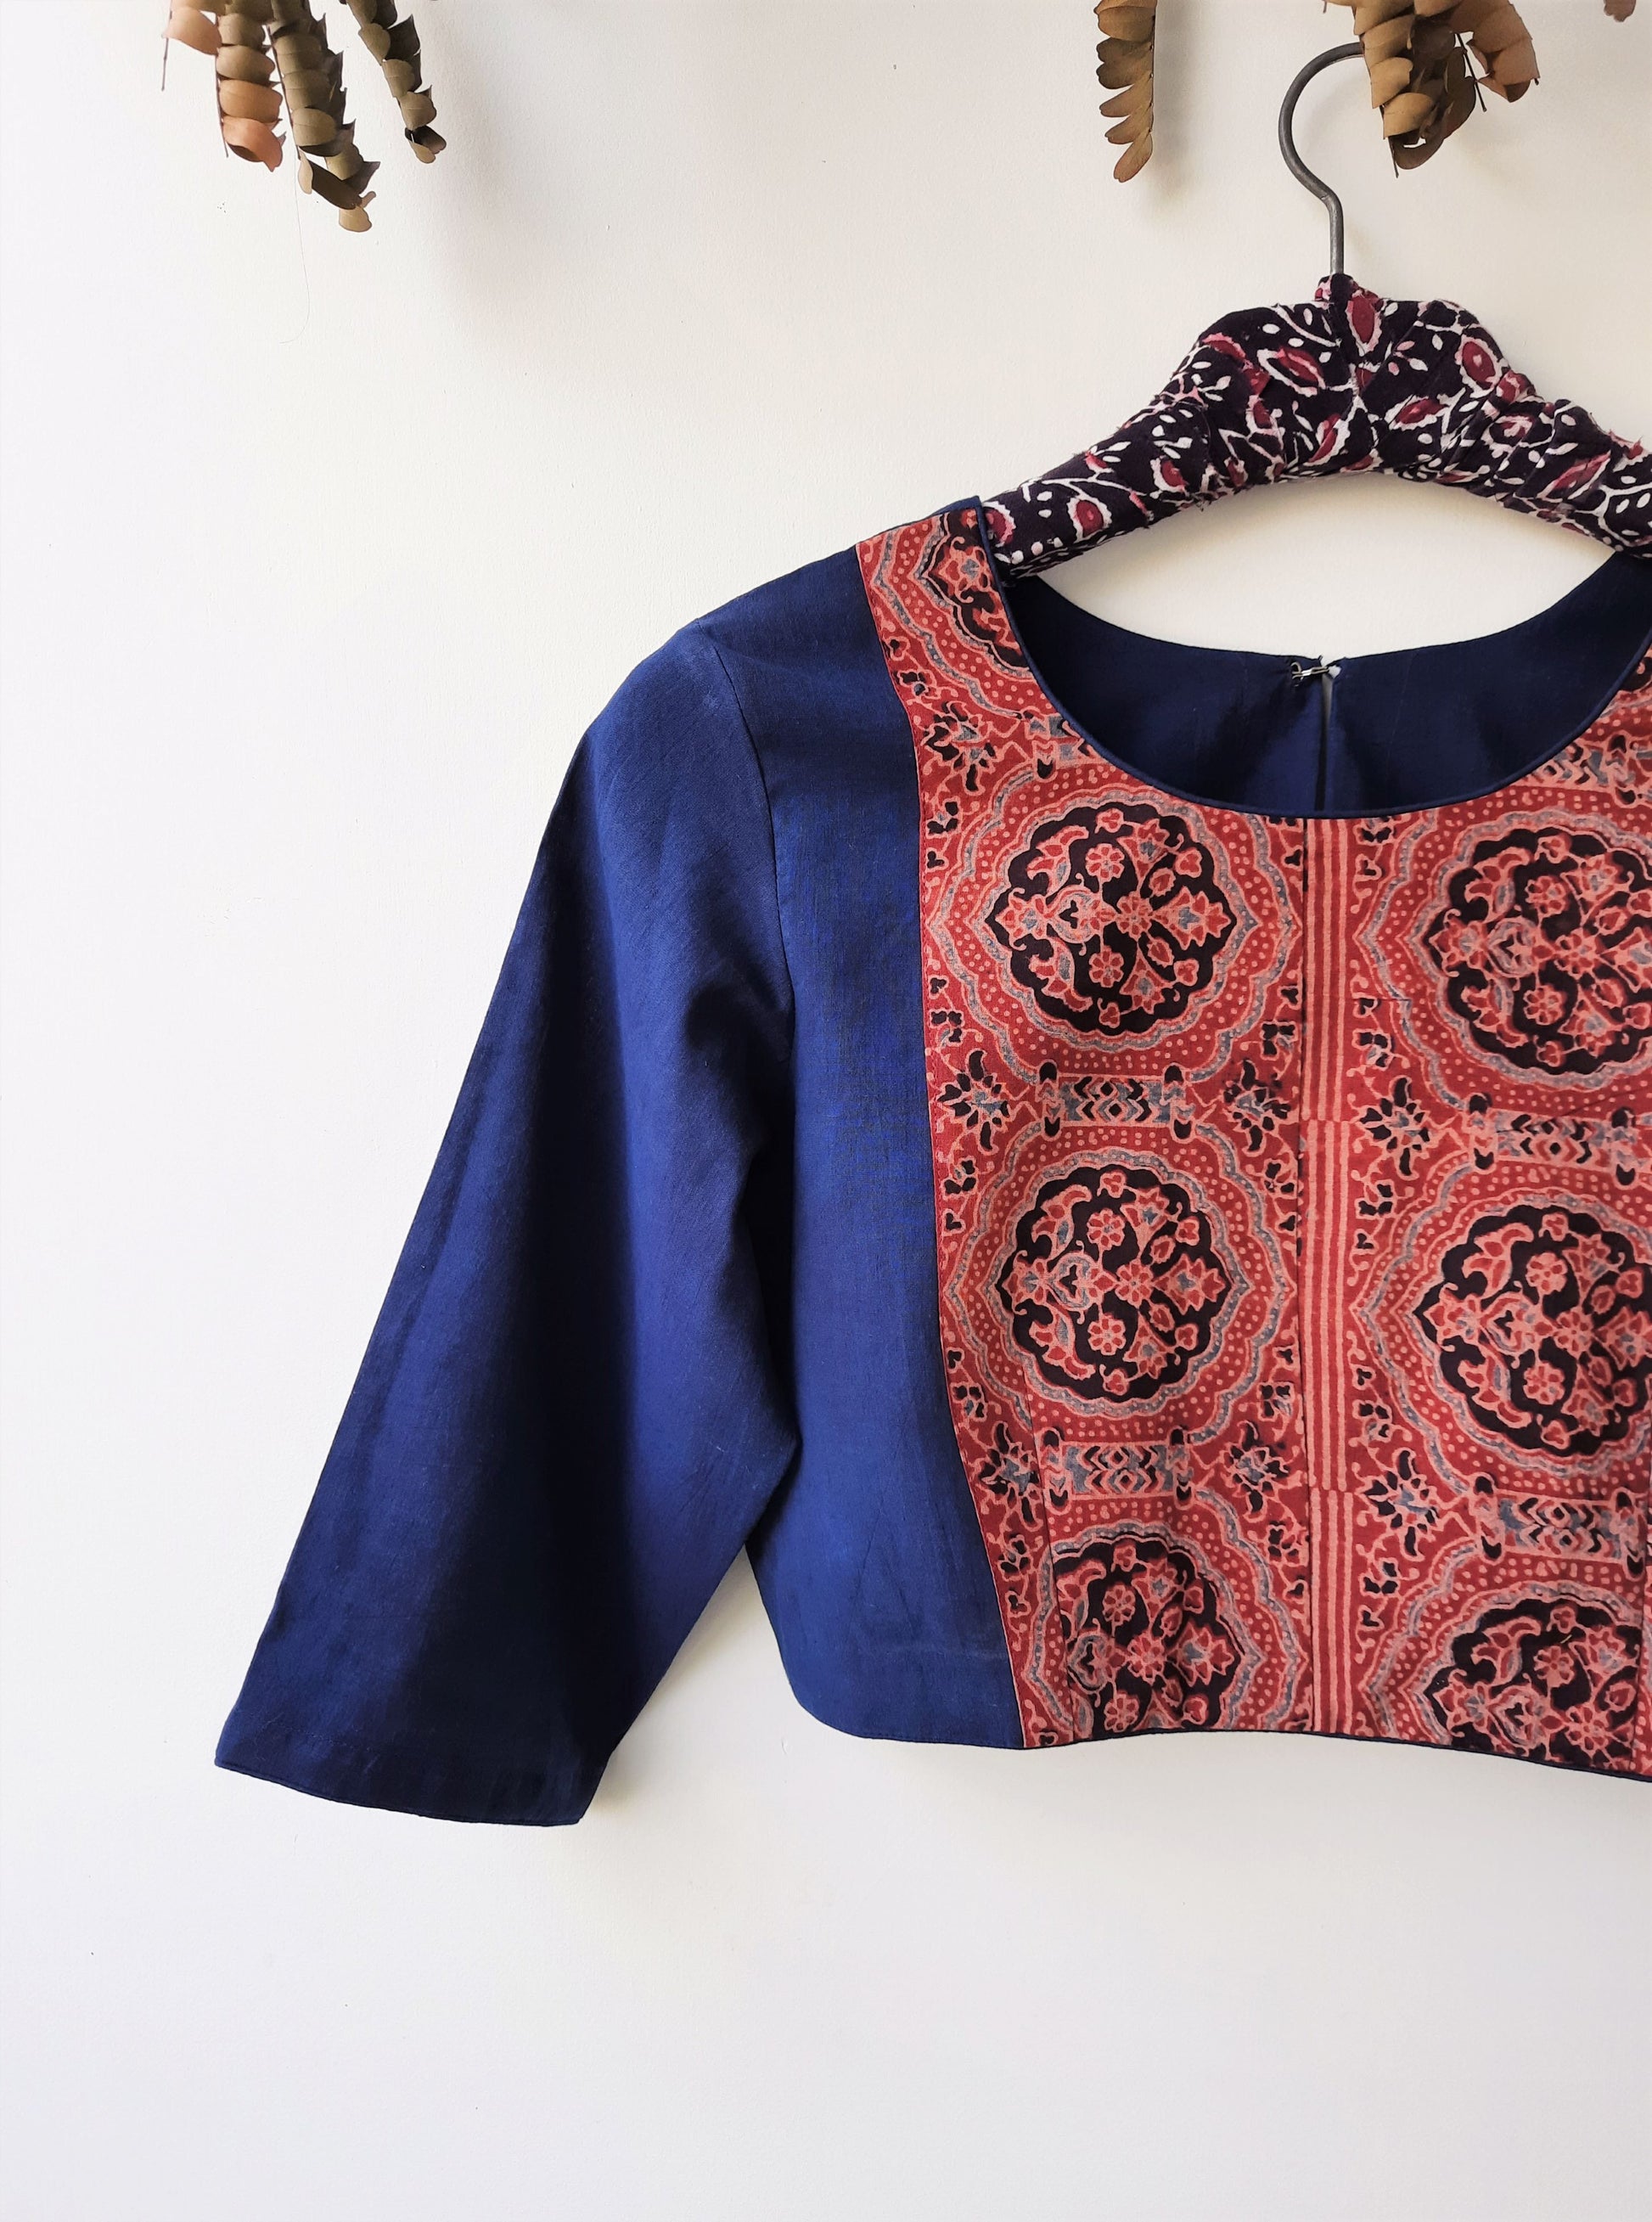 Indigo ajrakh blouse, indigo dyed saree blouse, handmade ajrakh blouse in indigo